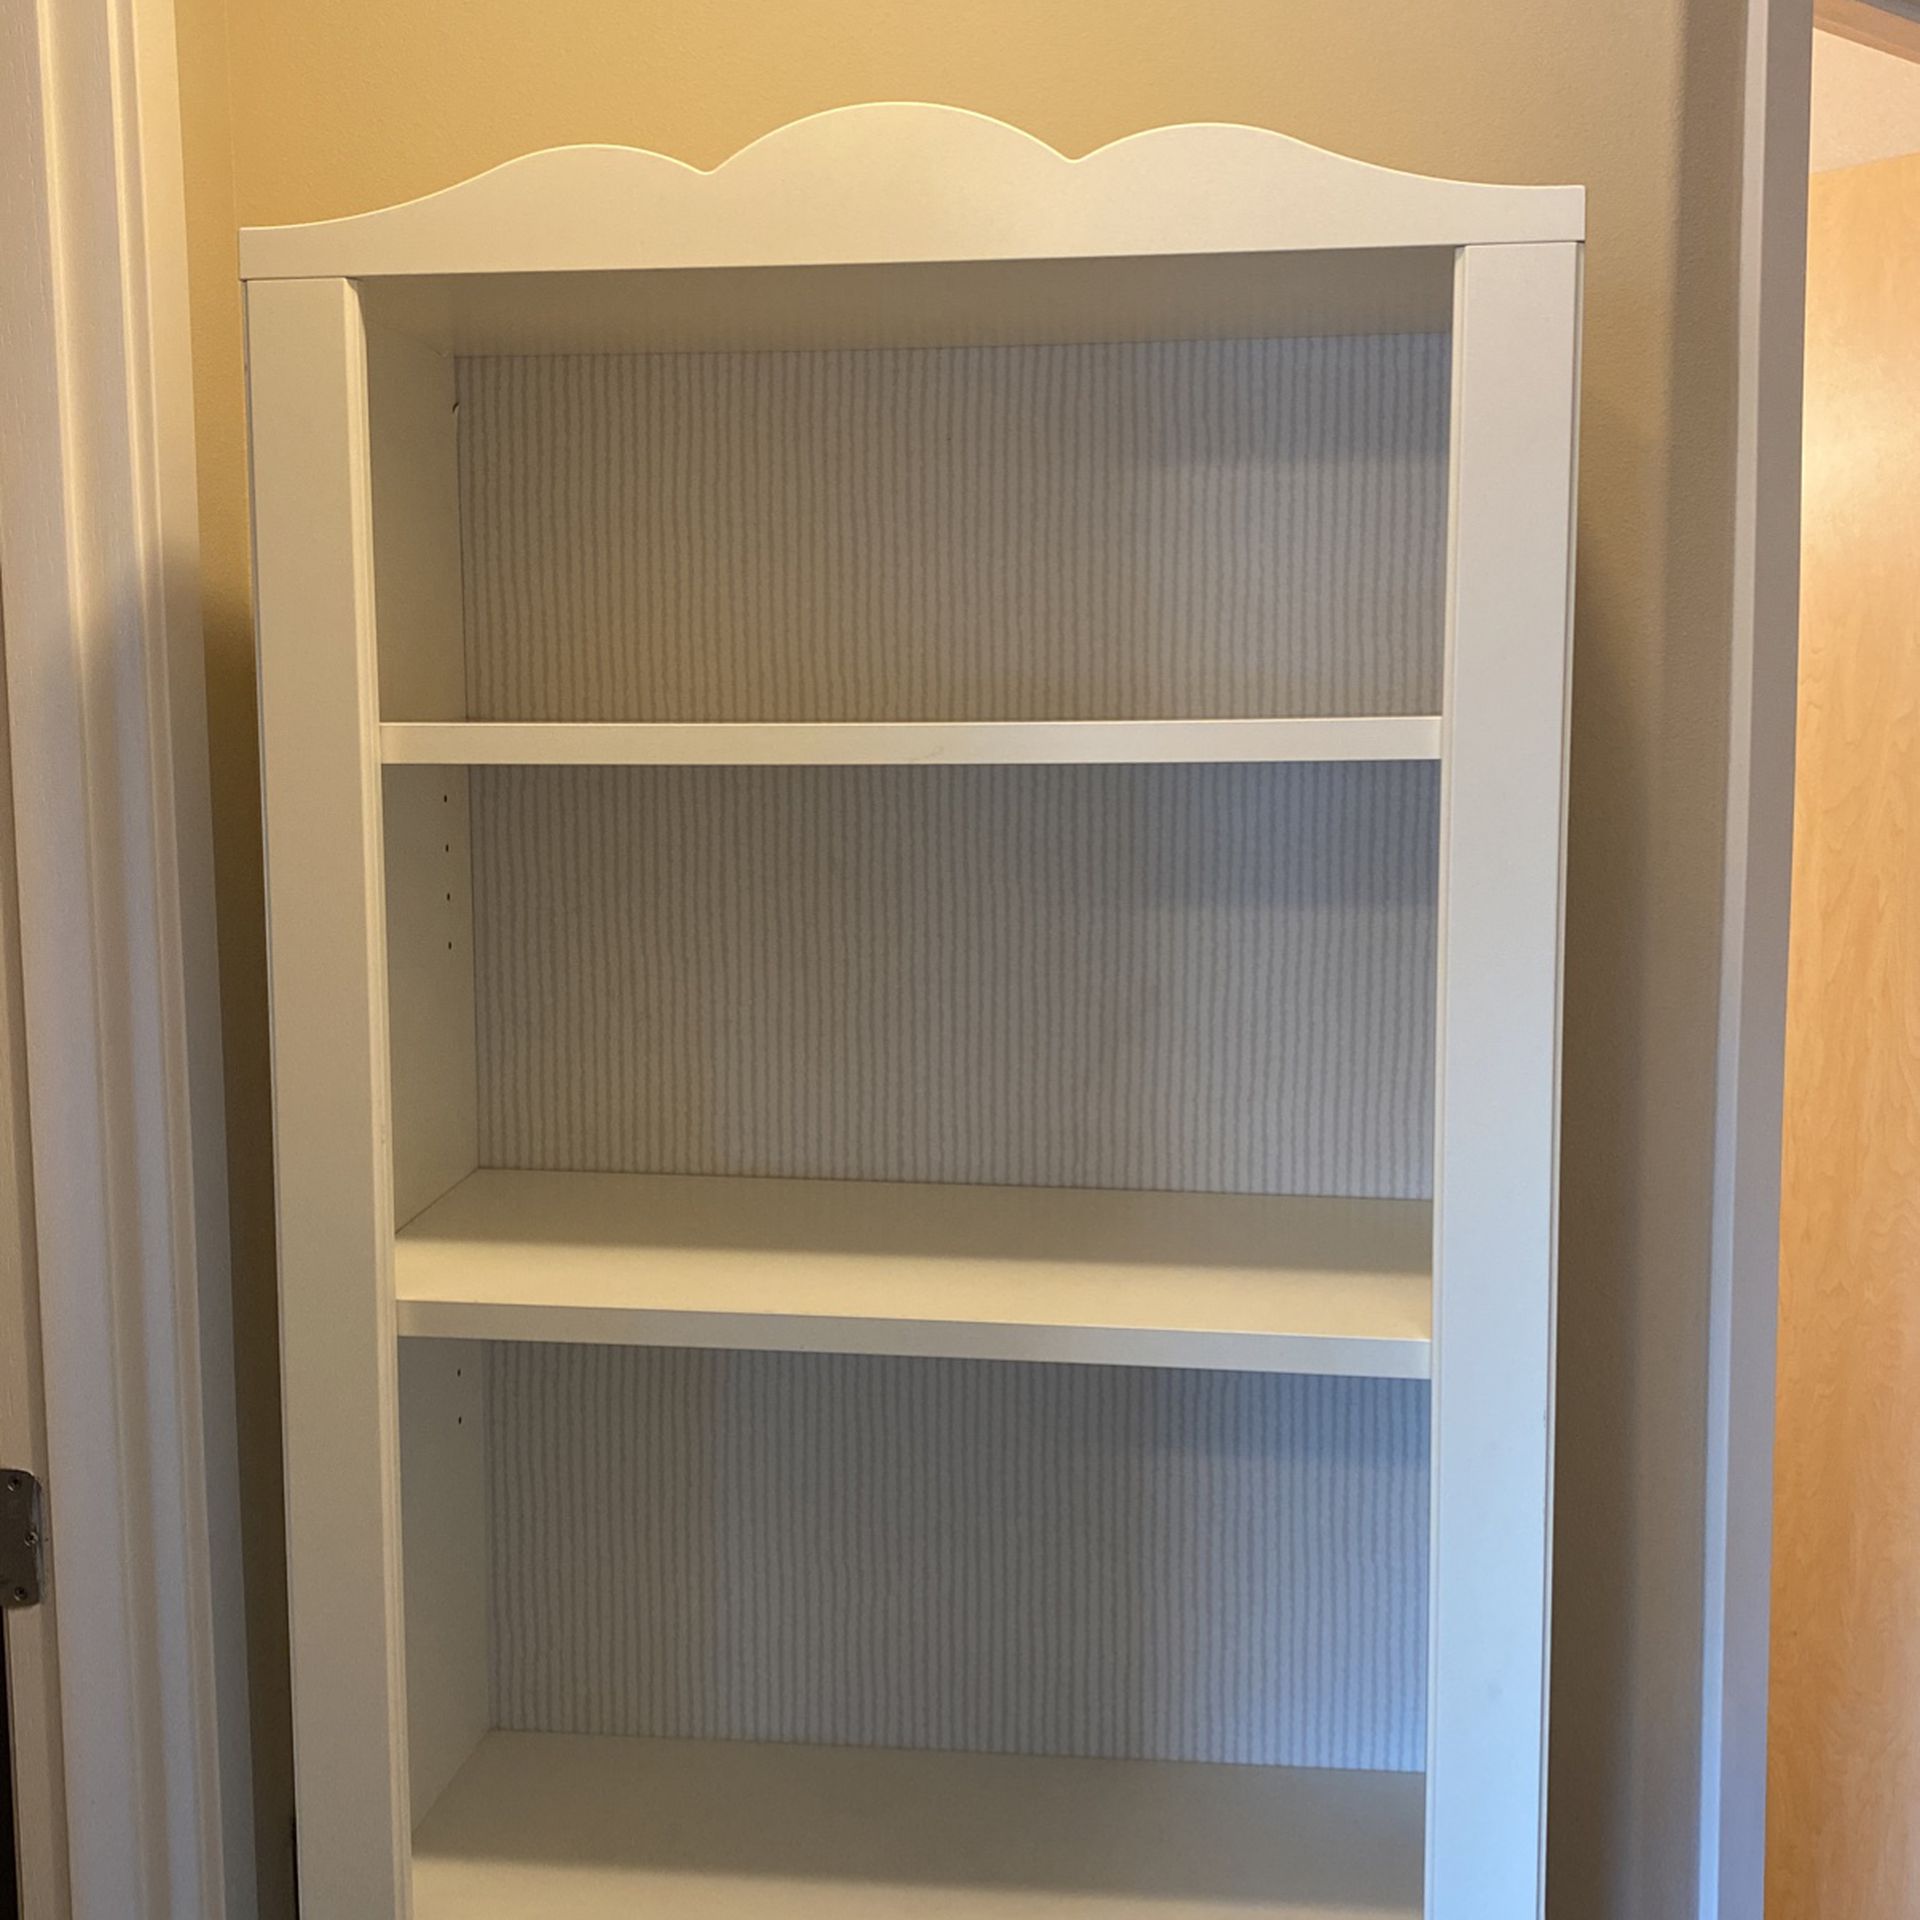 White Bookcase Shelf - great for girl room